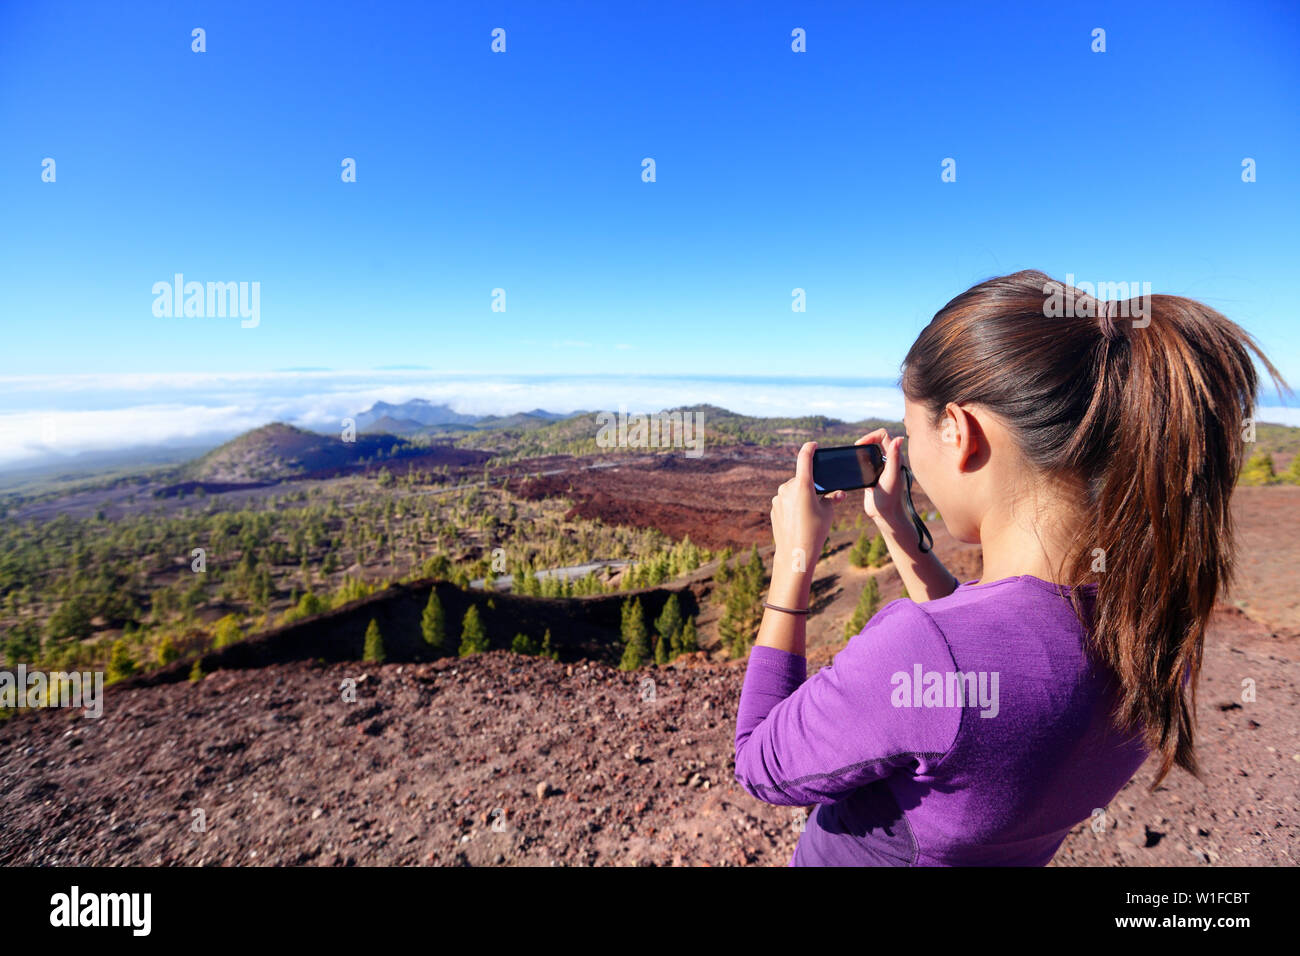 Wanderer Landschaft Bild oben am Berg. Schöne Natur auf dem Vulkan Teide, Teneriffa, Kanarische Inseln mit Mädchen Tourist können Sie über Smartphone, Fotos zu machen. Stockfoto